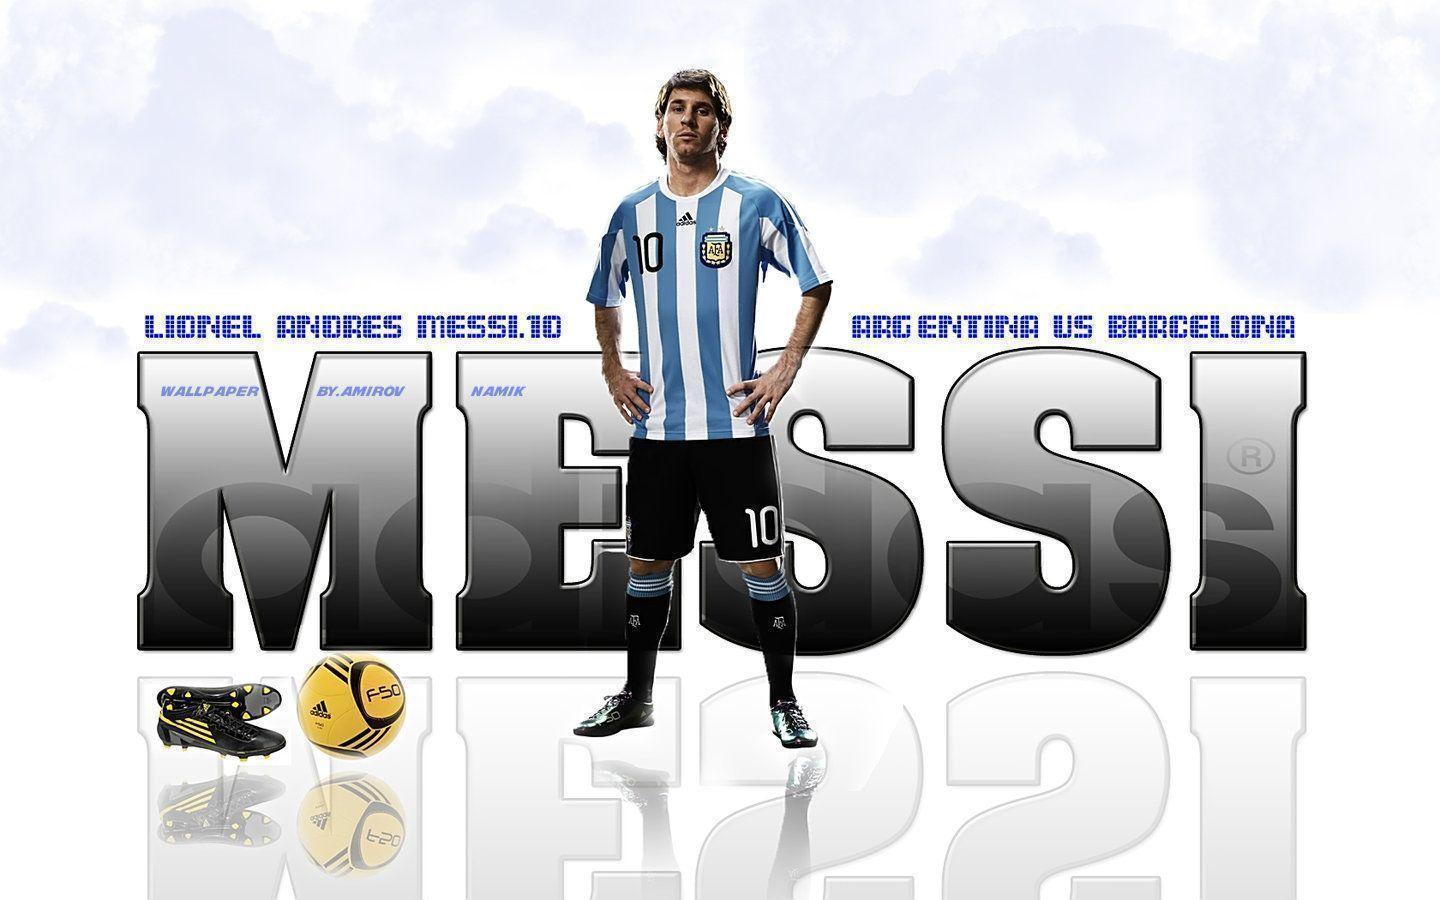 Lionel Messi Argentina Wallpaper Andres Messi Wallpaper